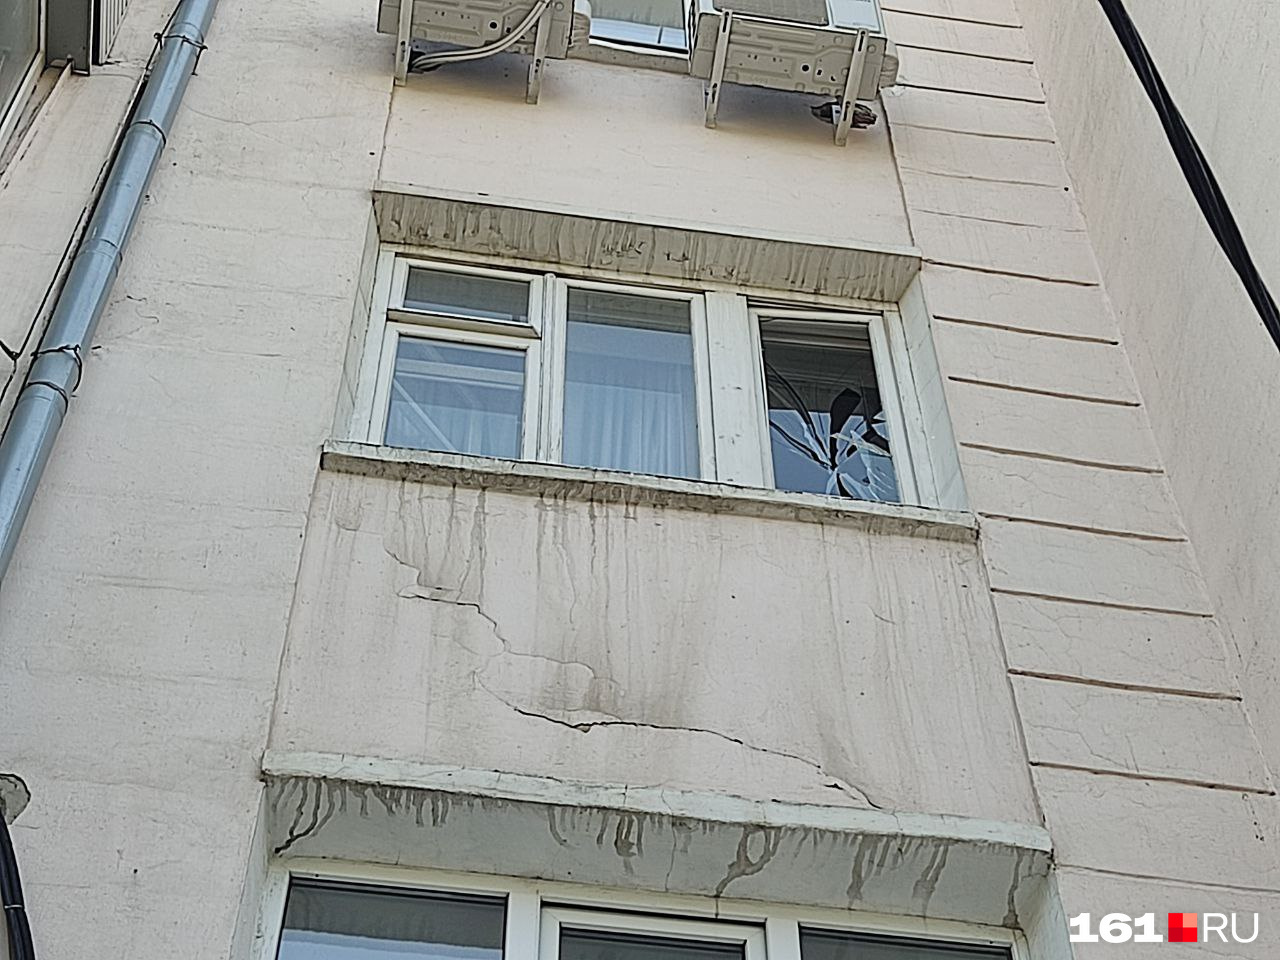 На месте падения БПЛА в Ростове ввели режим ЧС. 20 домов остаются без света